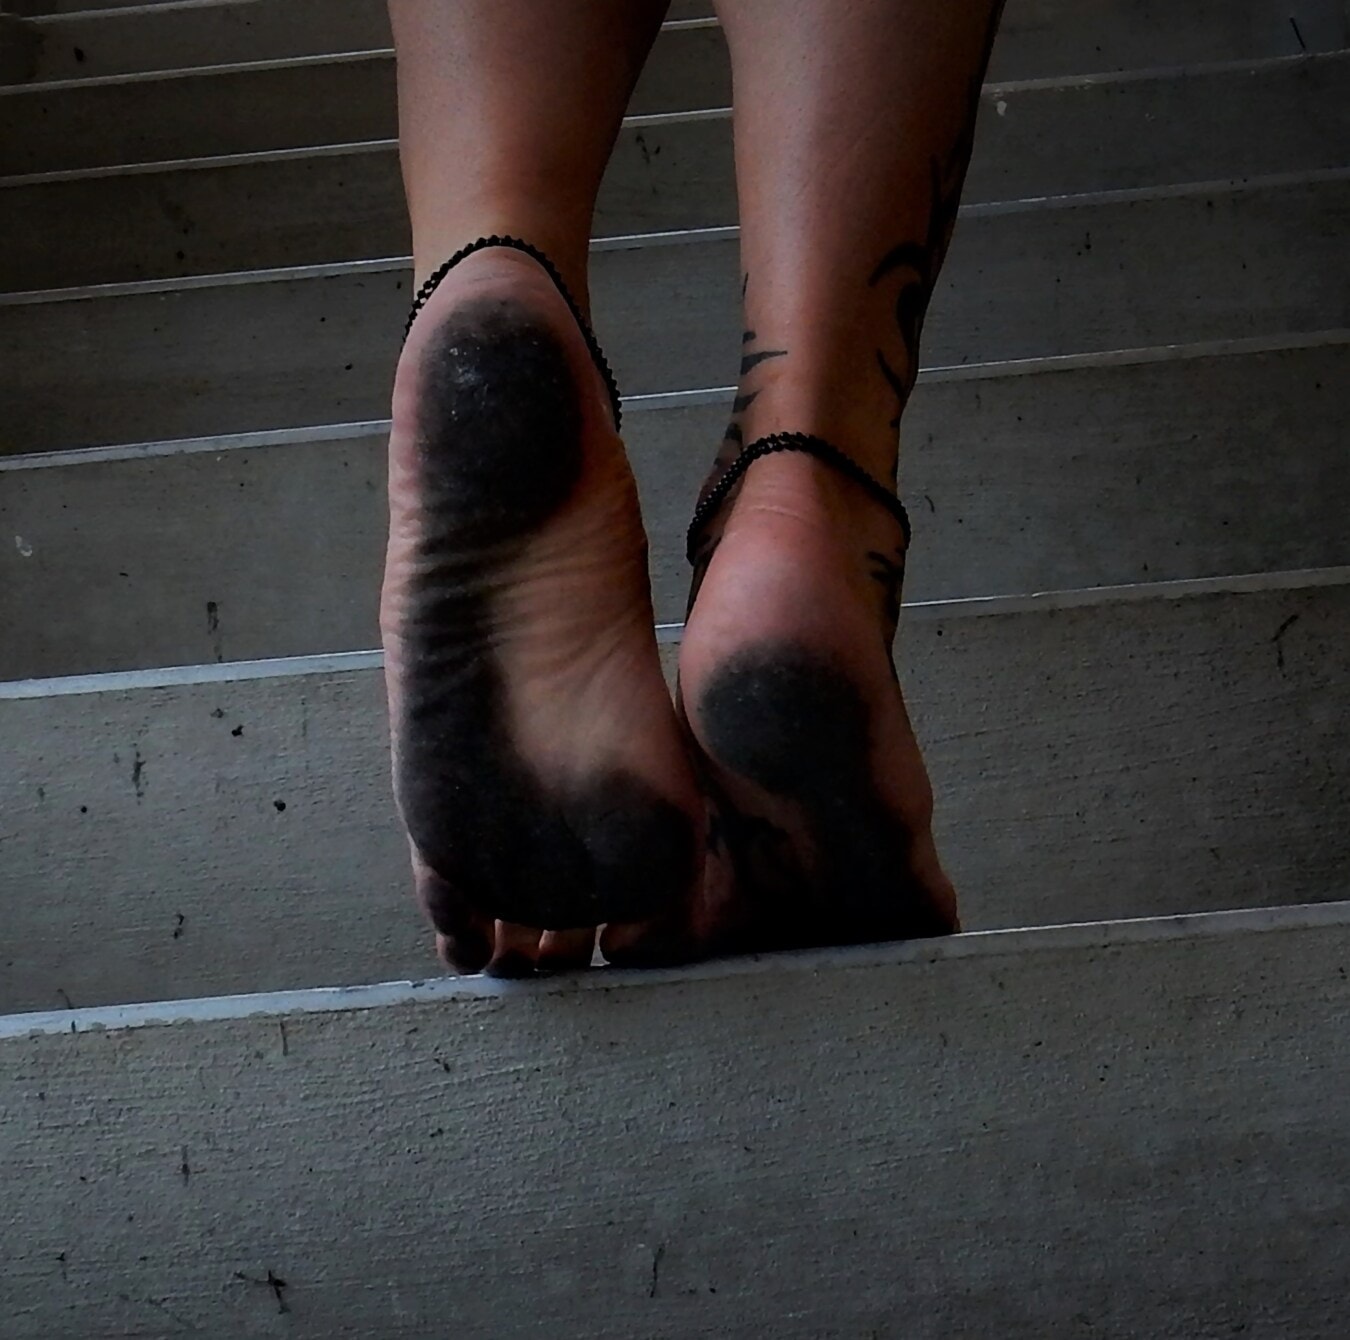 dirty, feet, legs, barefoot, concrete, stairs, footwear, walking, foot, steps